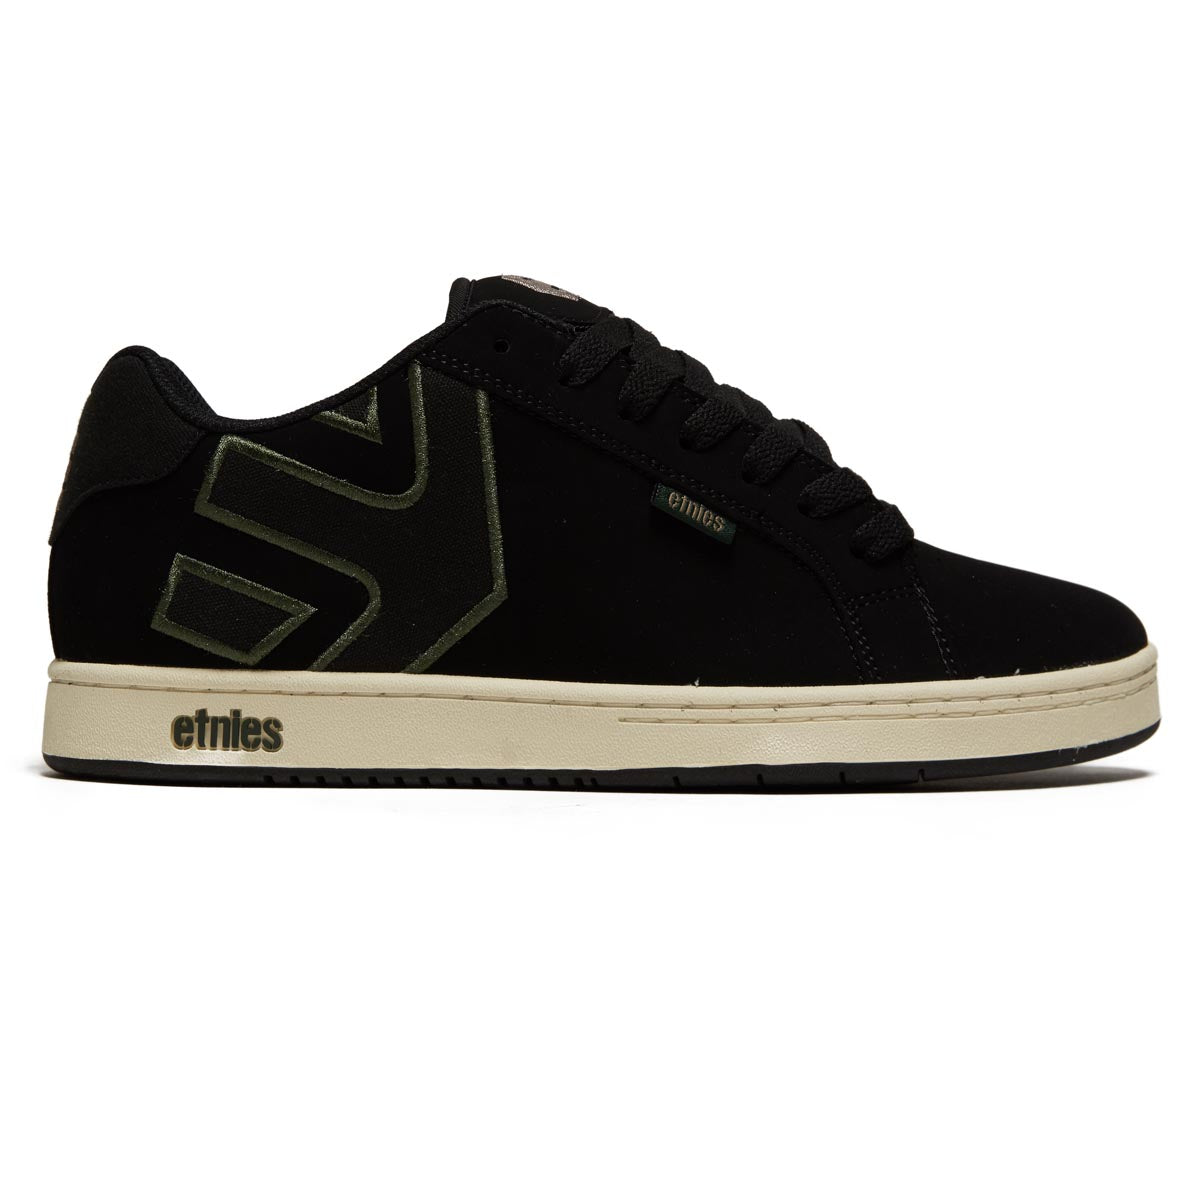 Etnies Fader Shoes - Black/Green image 1